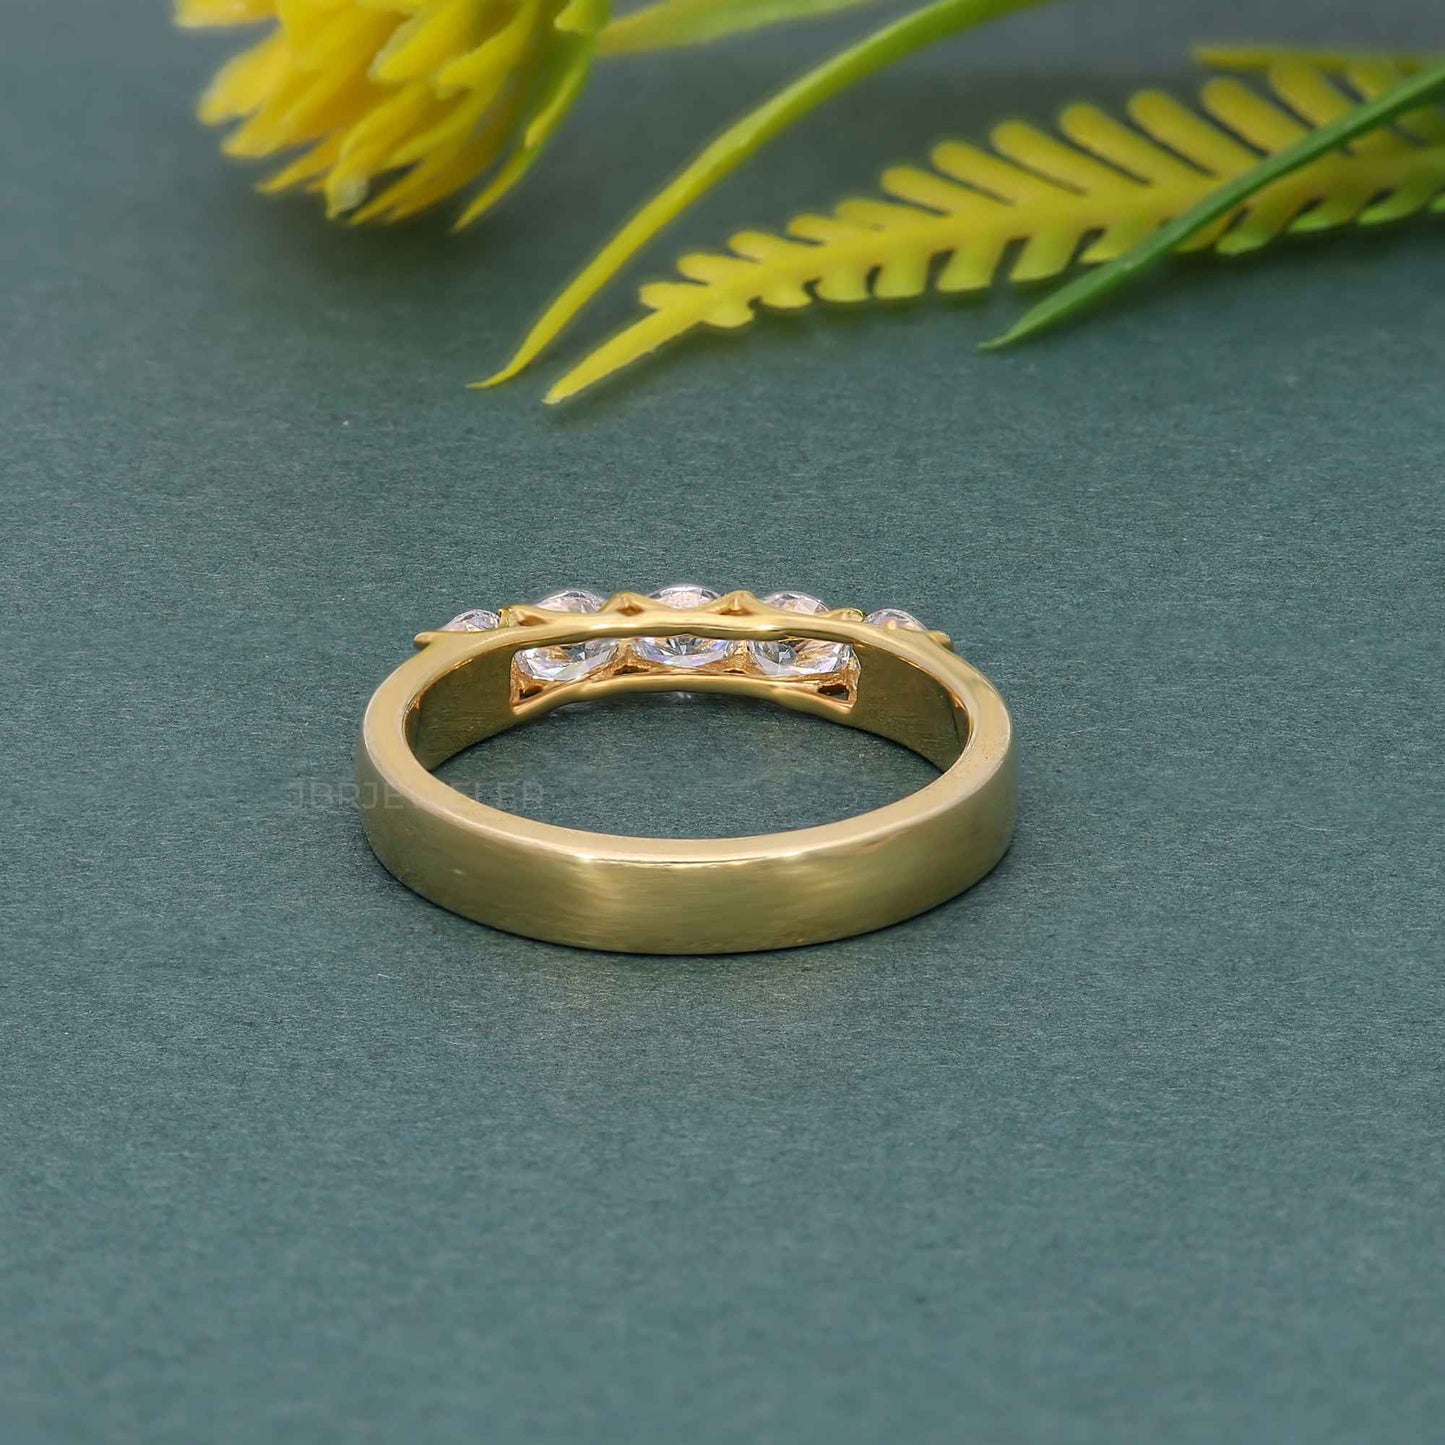 Trellis Five Stone Round Moissanite Diamond Wedding Ring